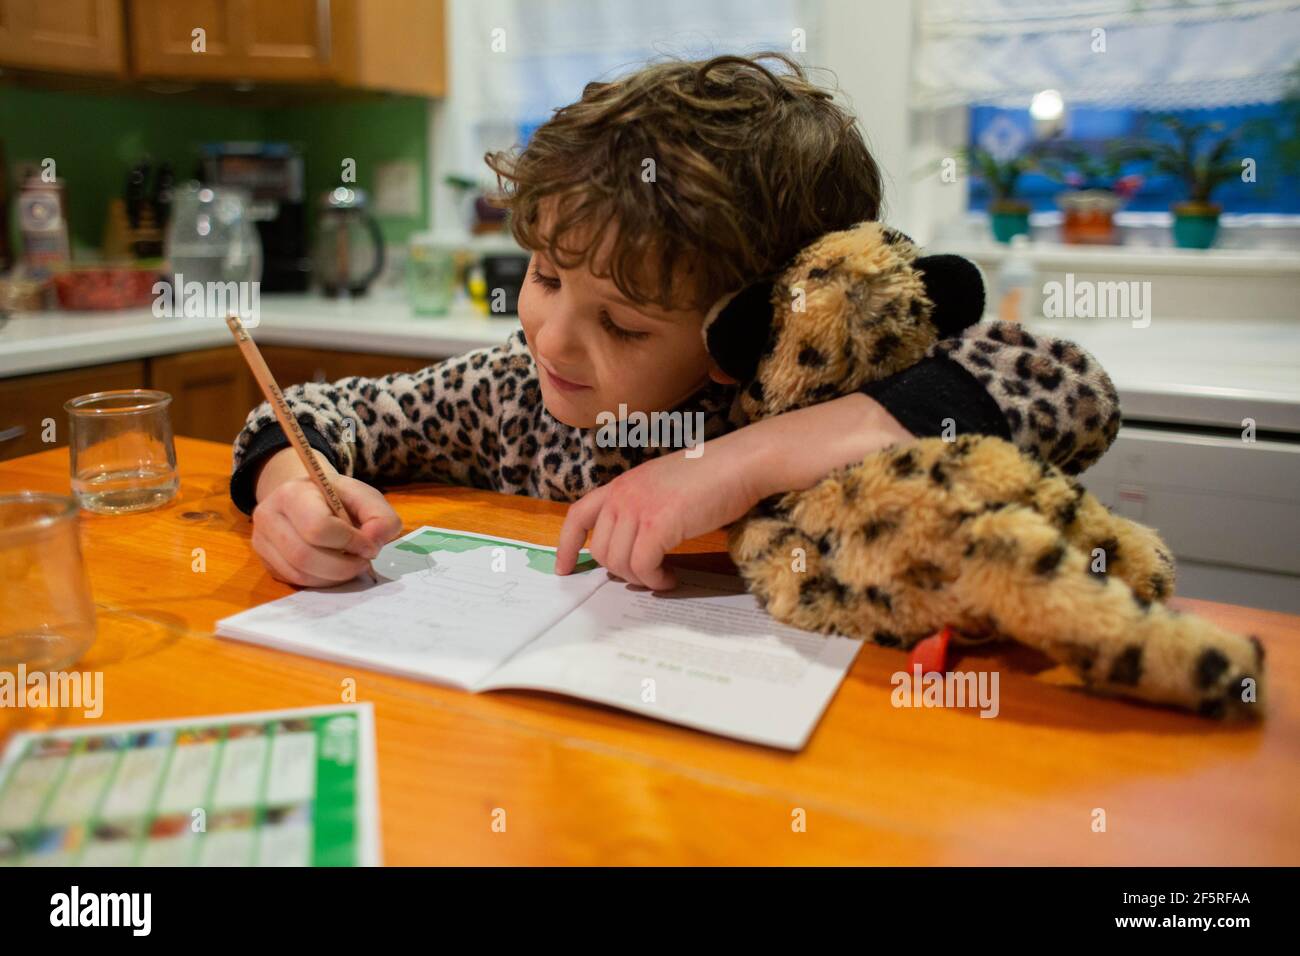 Petit garçon tenant un animal bourré tout en écrivant Banque D'Images